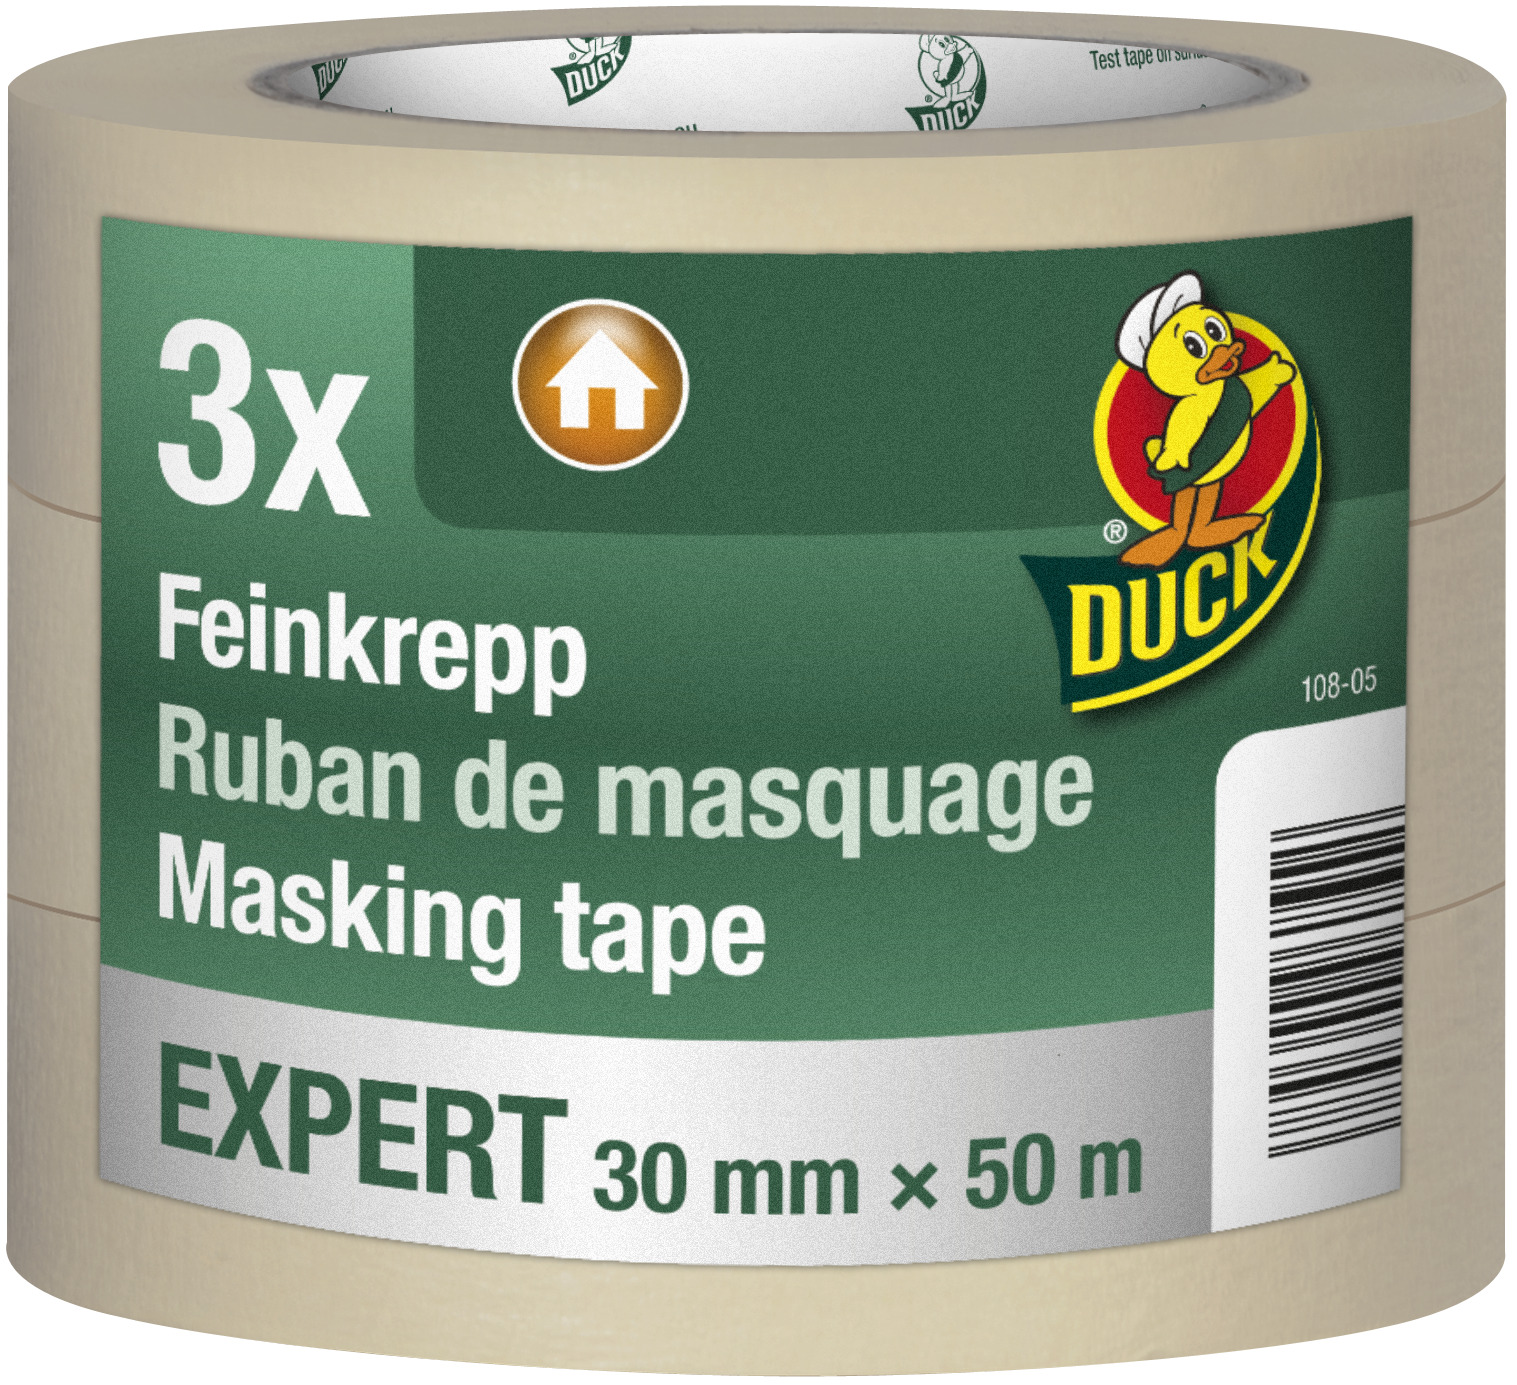 Kip Feinkrepp EXPERT Pack